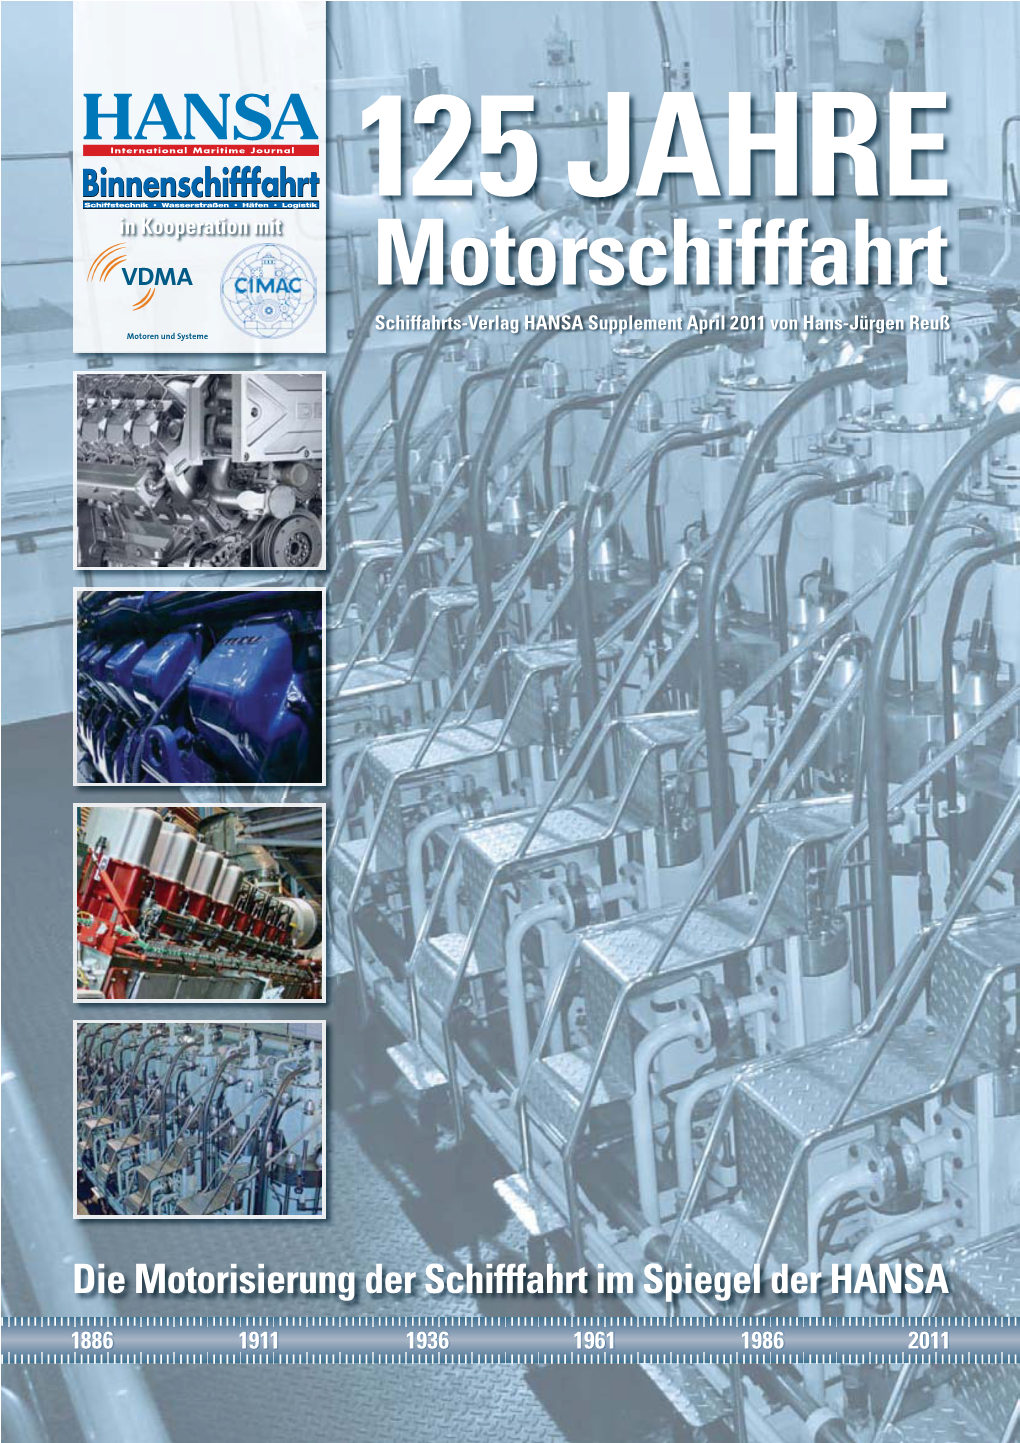 Motorschifffahrt Schiffahrts-Verlag HANSA Supplement April 2011 Von Hans-Jürgen Reuß